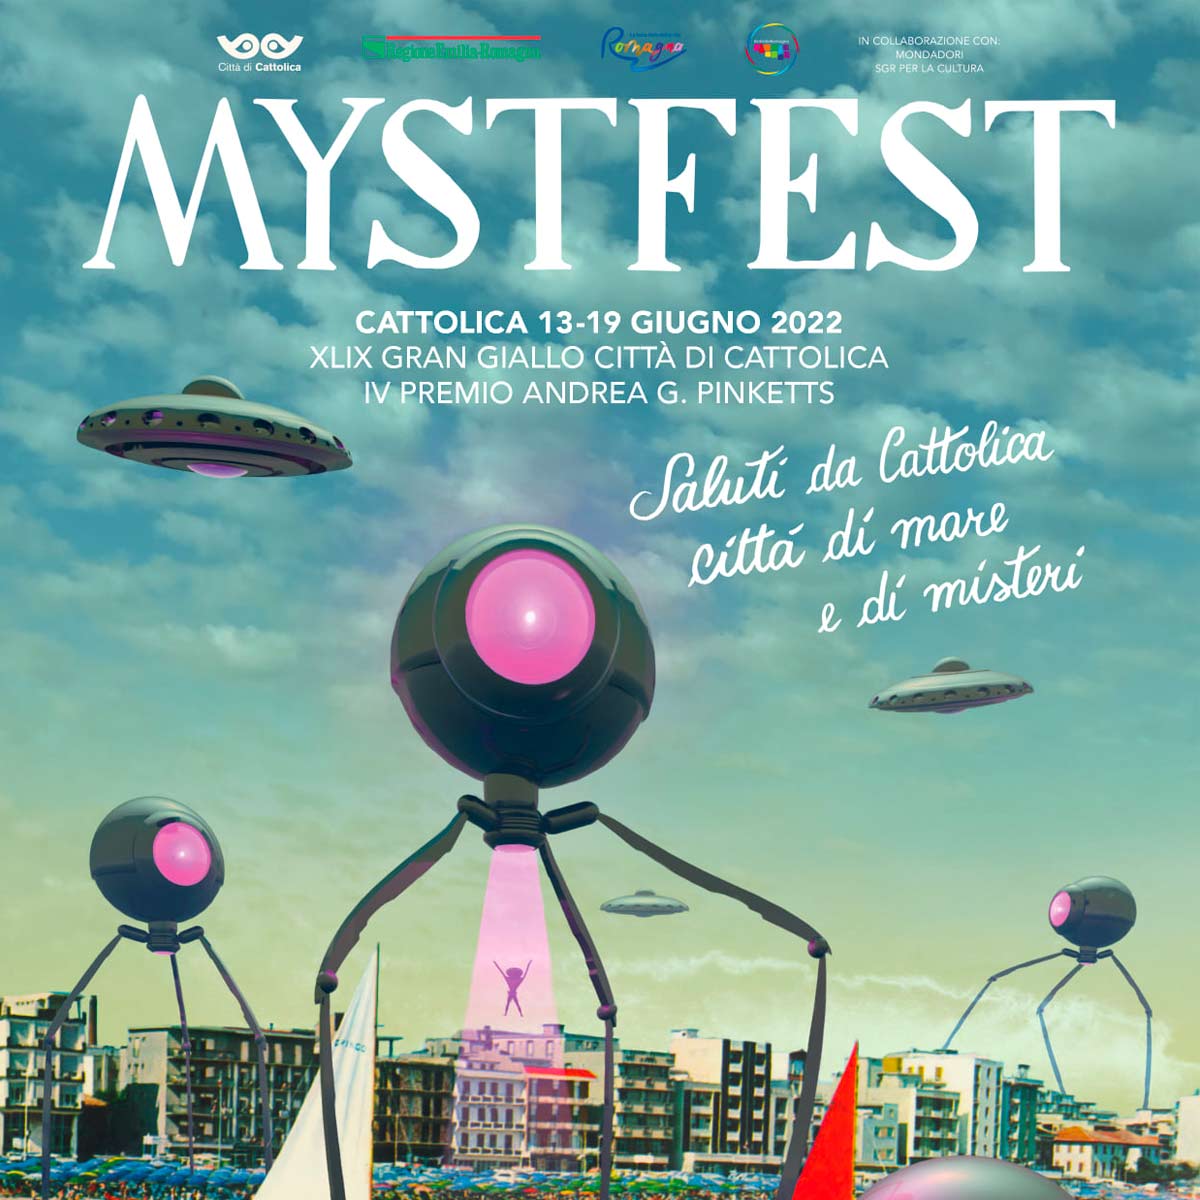 Mystfest